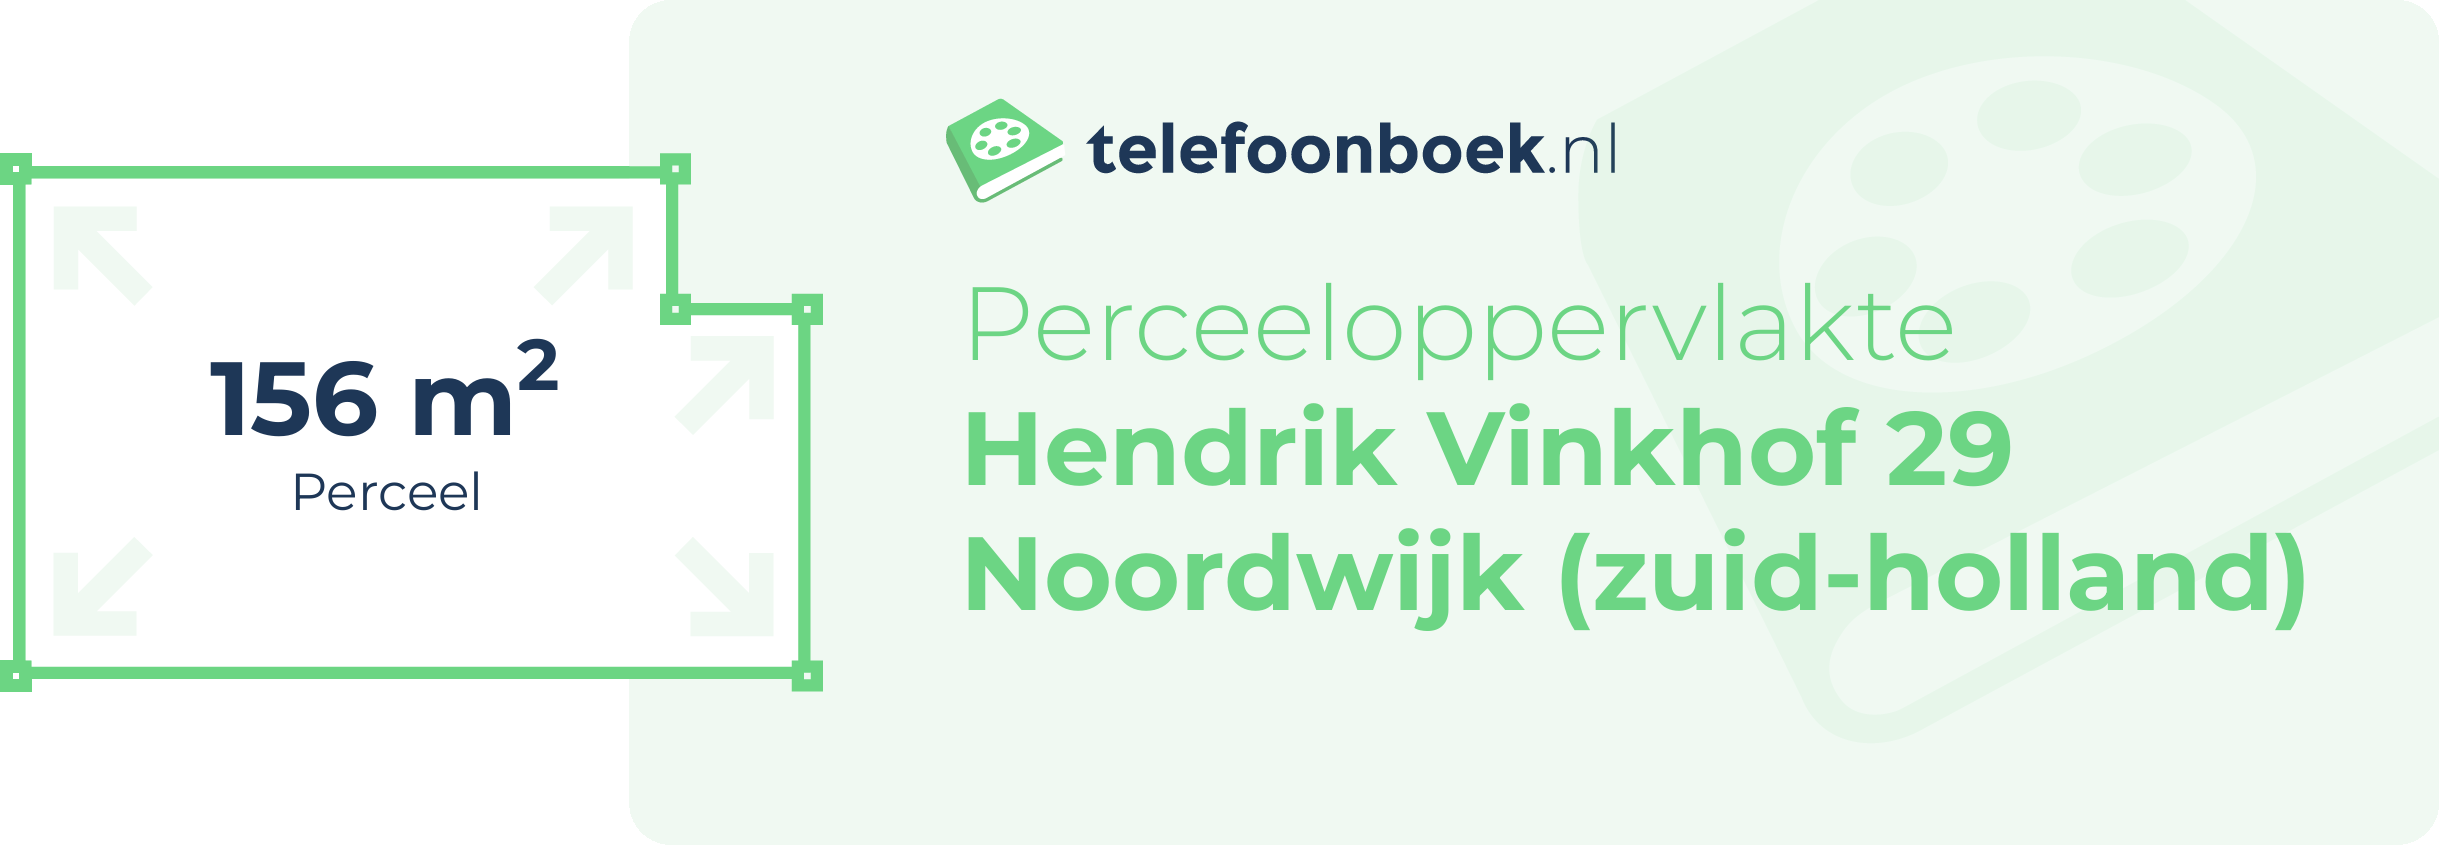 Perceeloppervlakte Hendrik Vinkhof 29 Noordwijk (Zuid-Holland)